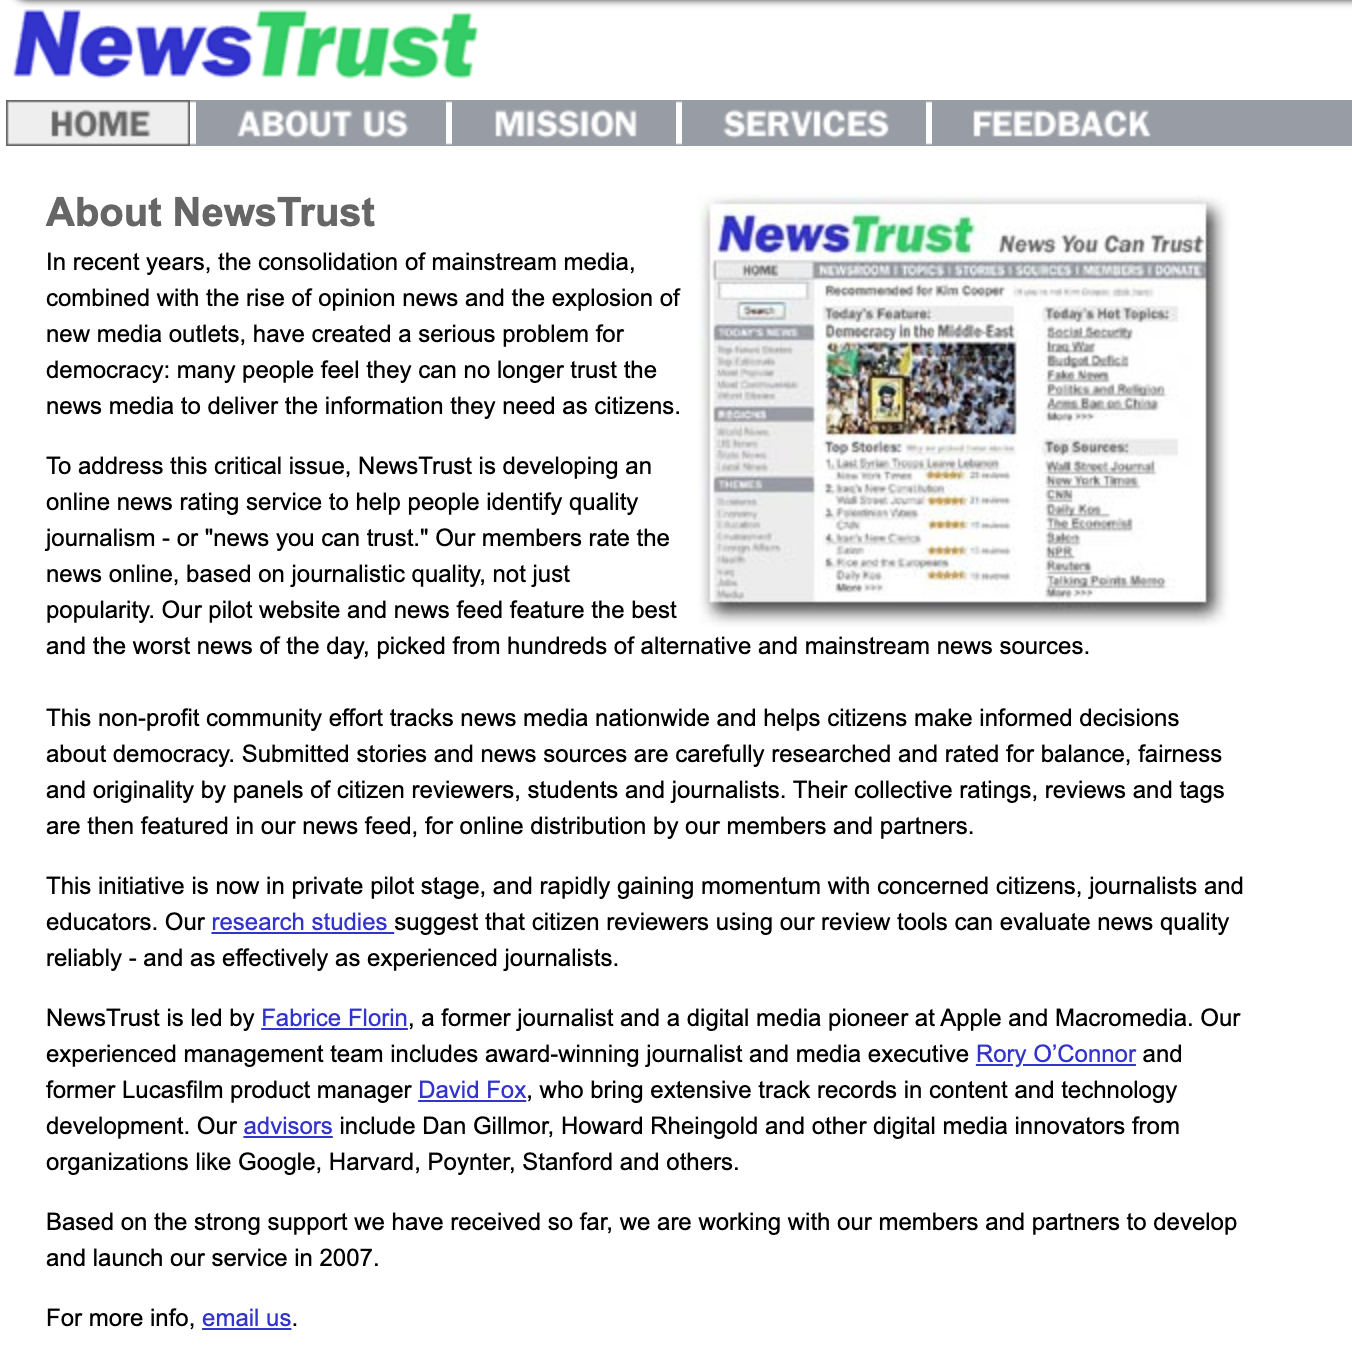 고품질 저널리즘 추구하는 소셜 뉴스사이트 newstrust